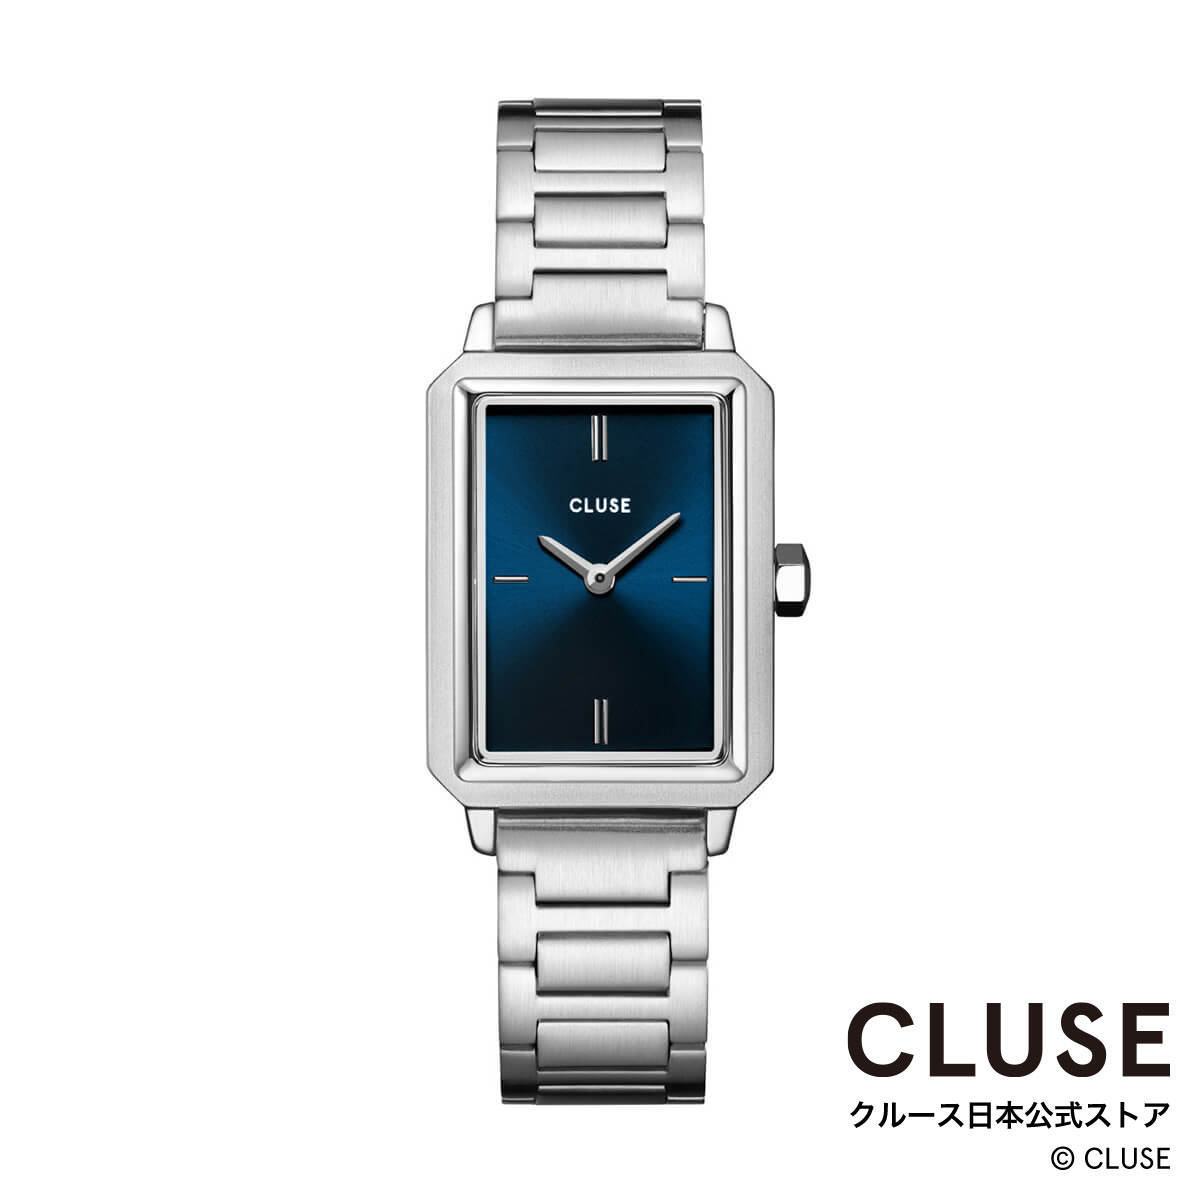 クルース ビジネス腕時計 レディース クルース CLUSE 日本公式ストア フリューレット スティール ダークブルー シルバー レディース 女性 腕時計 時計 防水 クォーツ